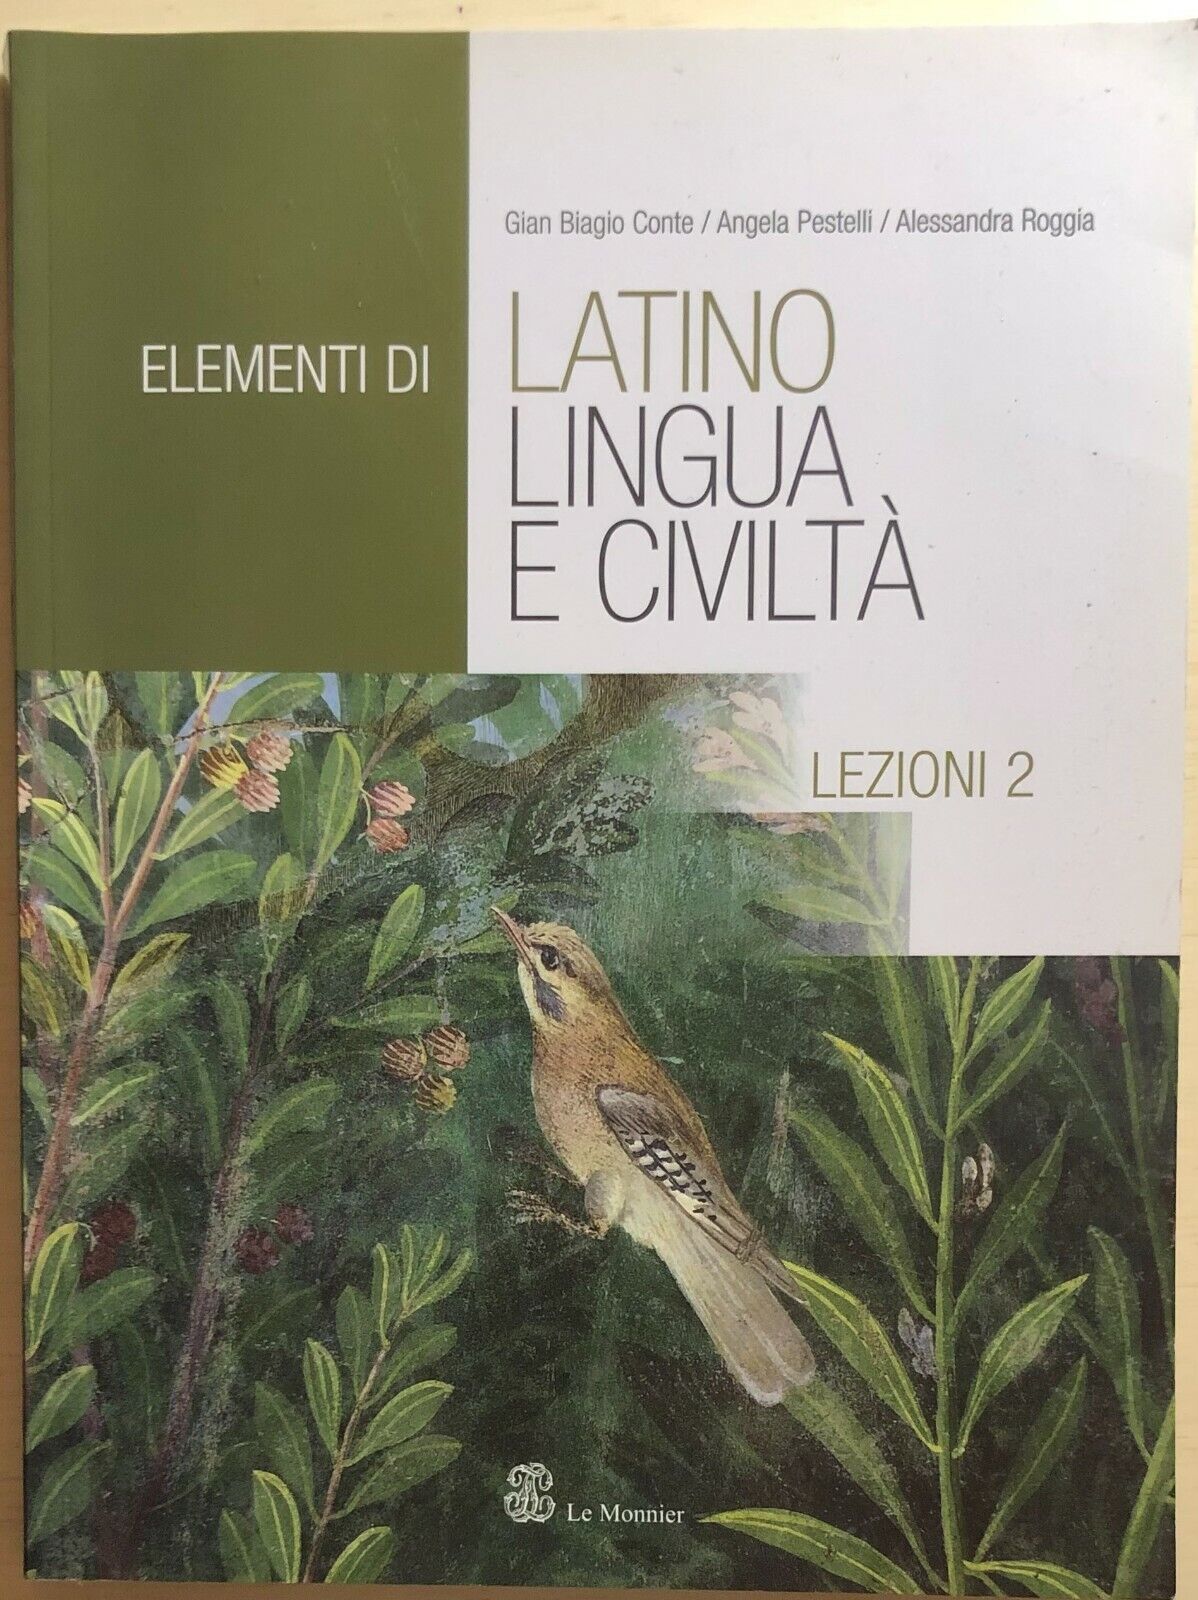 Elementi di latino 2 di Aa.vv., 2006, Le Monnier